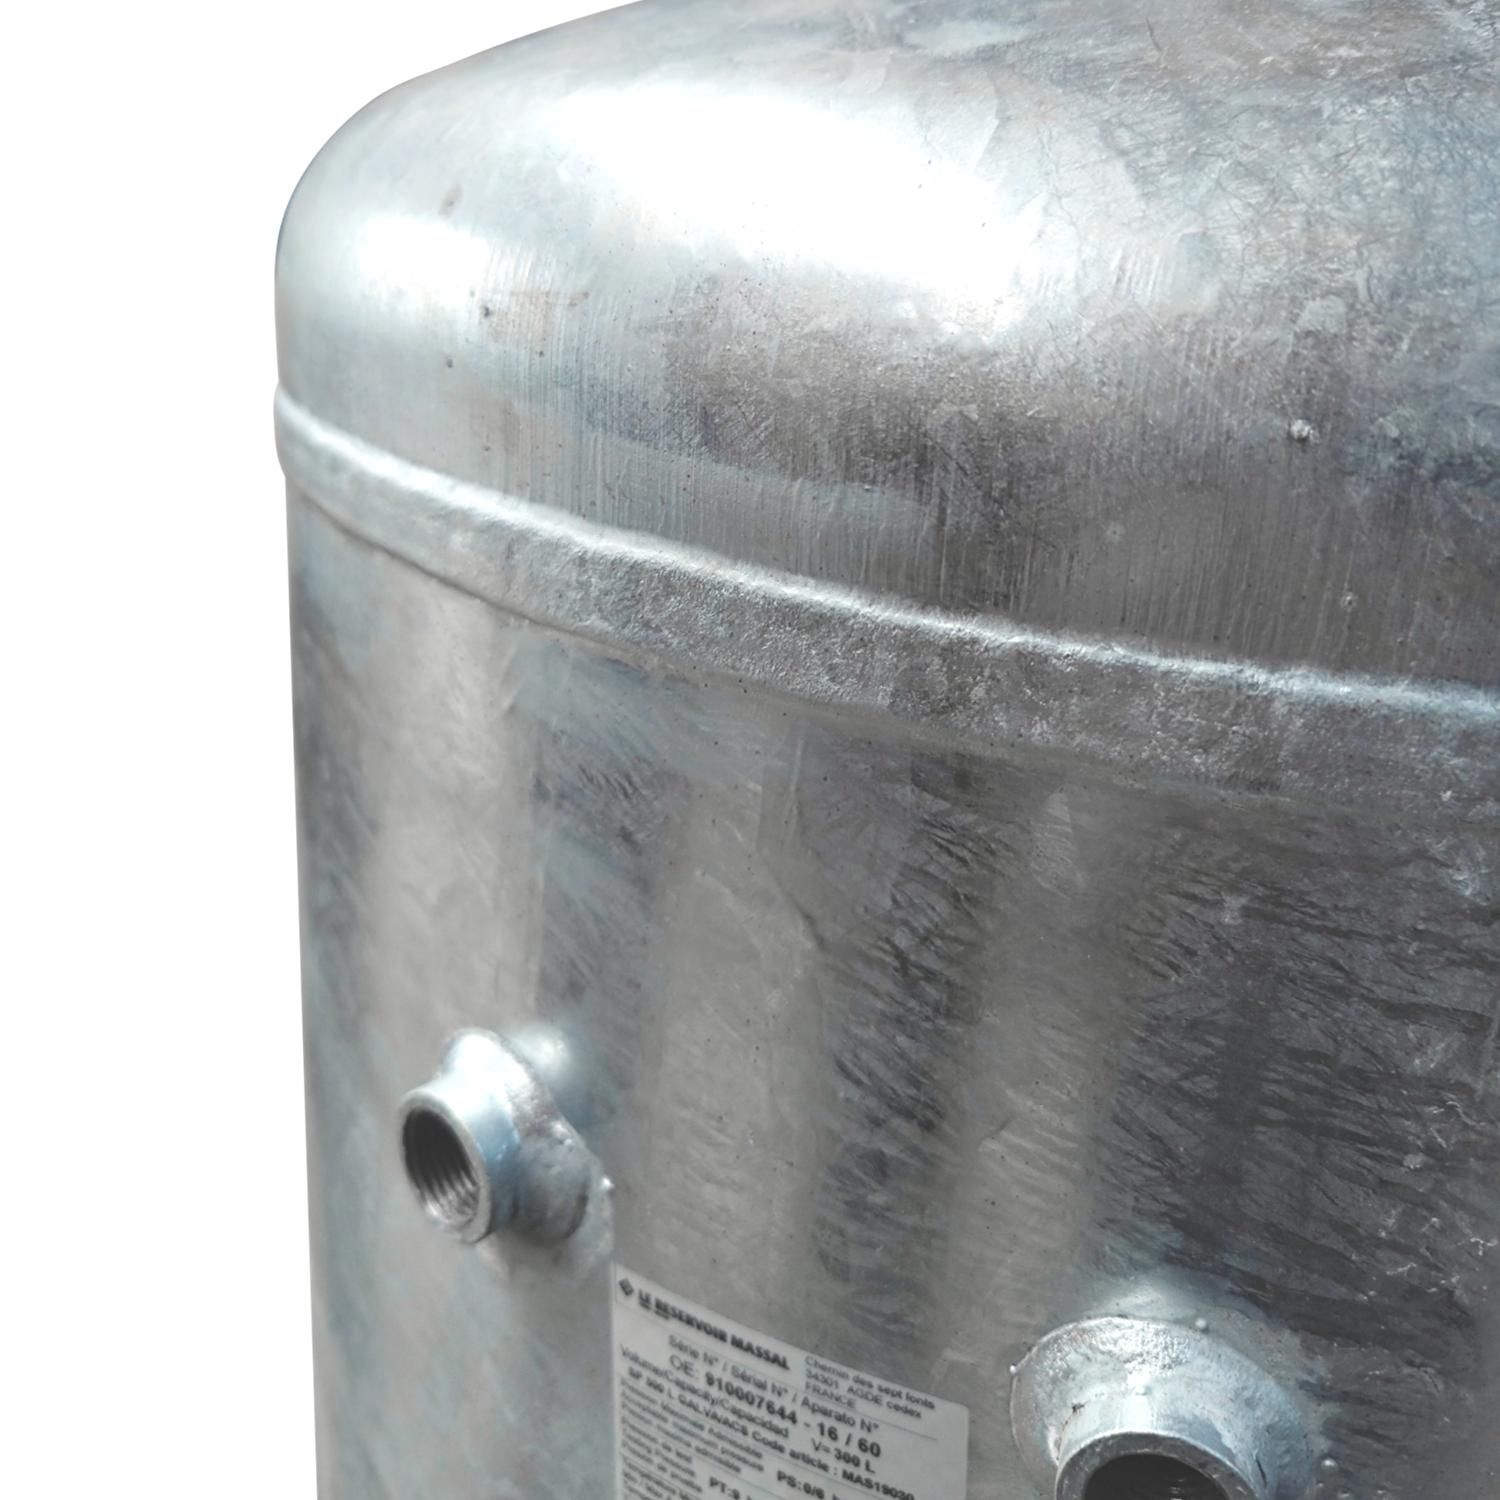 Réservoir sous pression en acier inoxydable 304 entièrement automatique,  Réservoir d'eau sous pressi…Voir plus Réservoir sous pression en acier